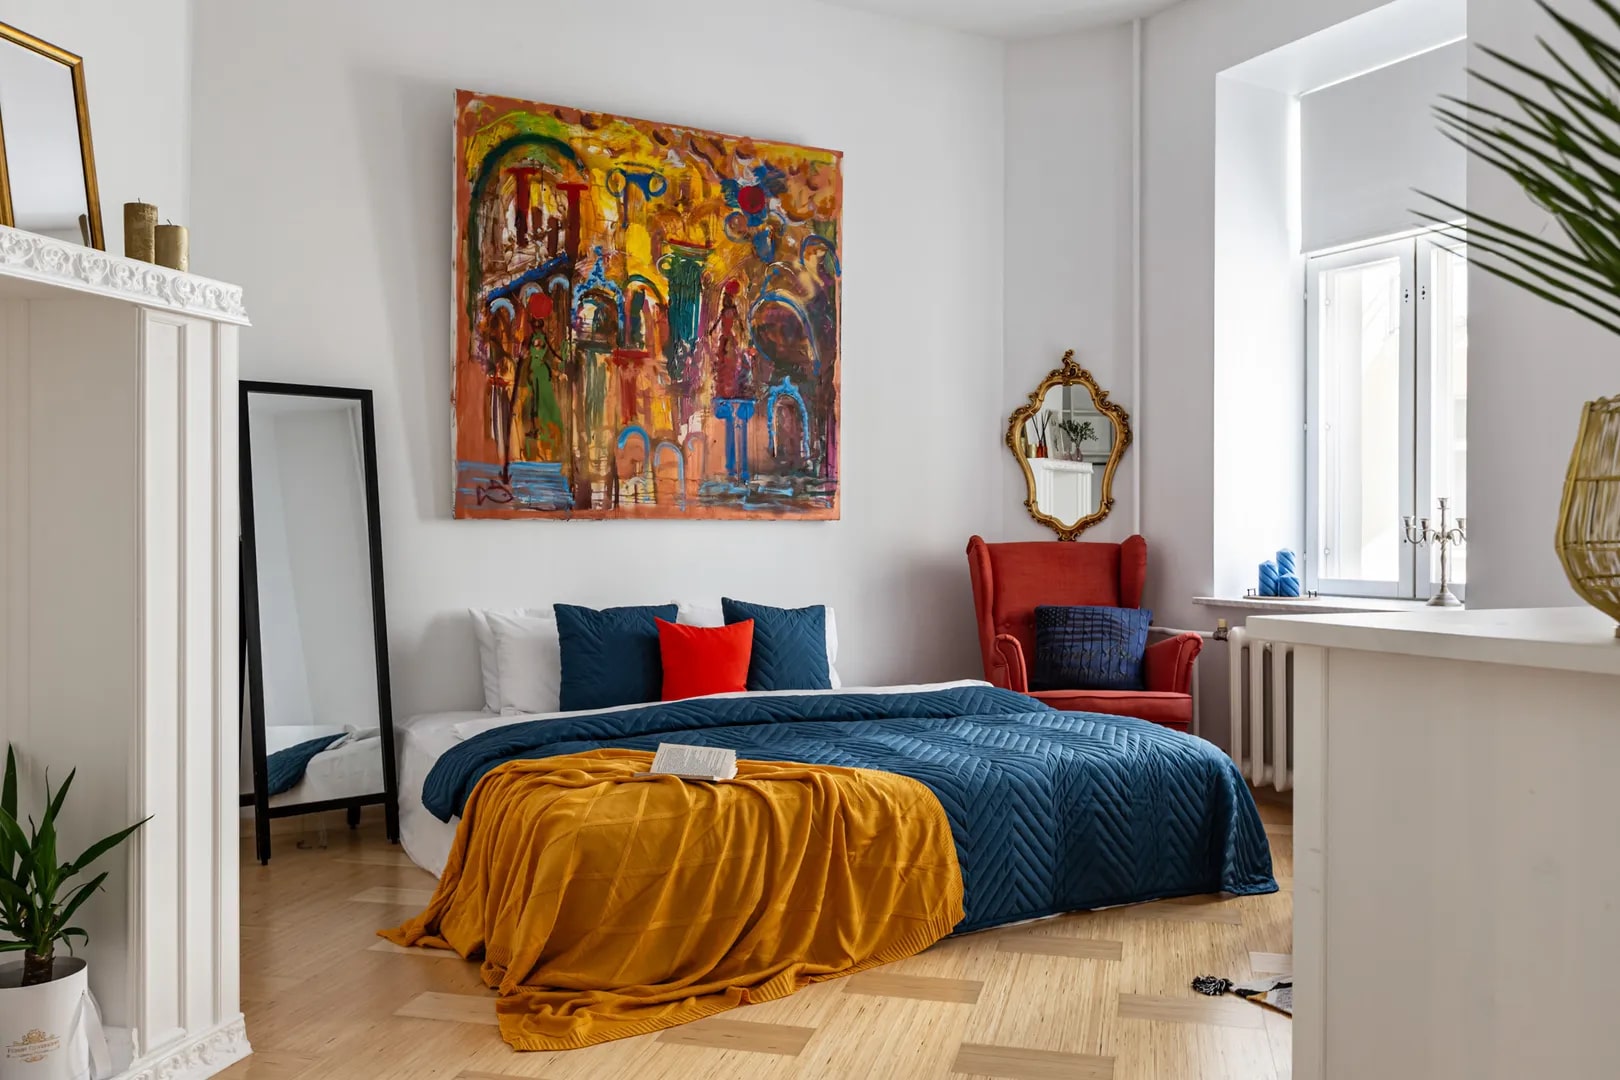 Кровать застелена цветным покрывалом, на стене - современное искусство.